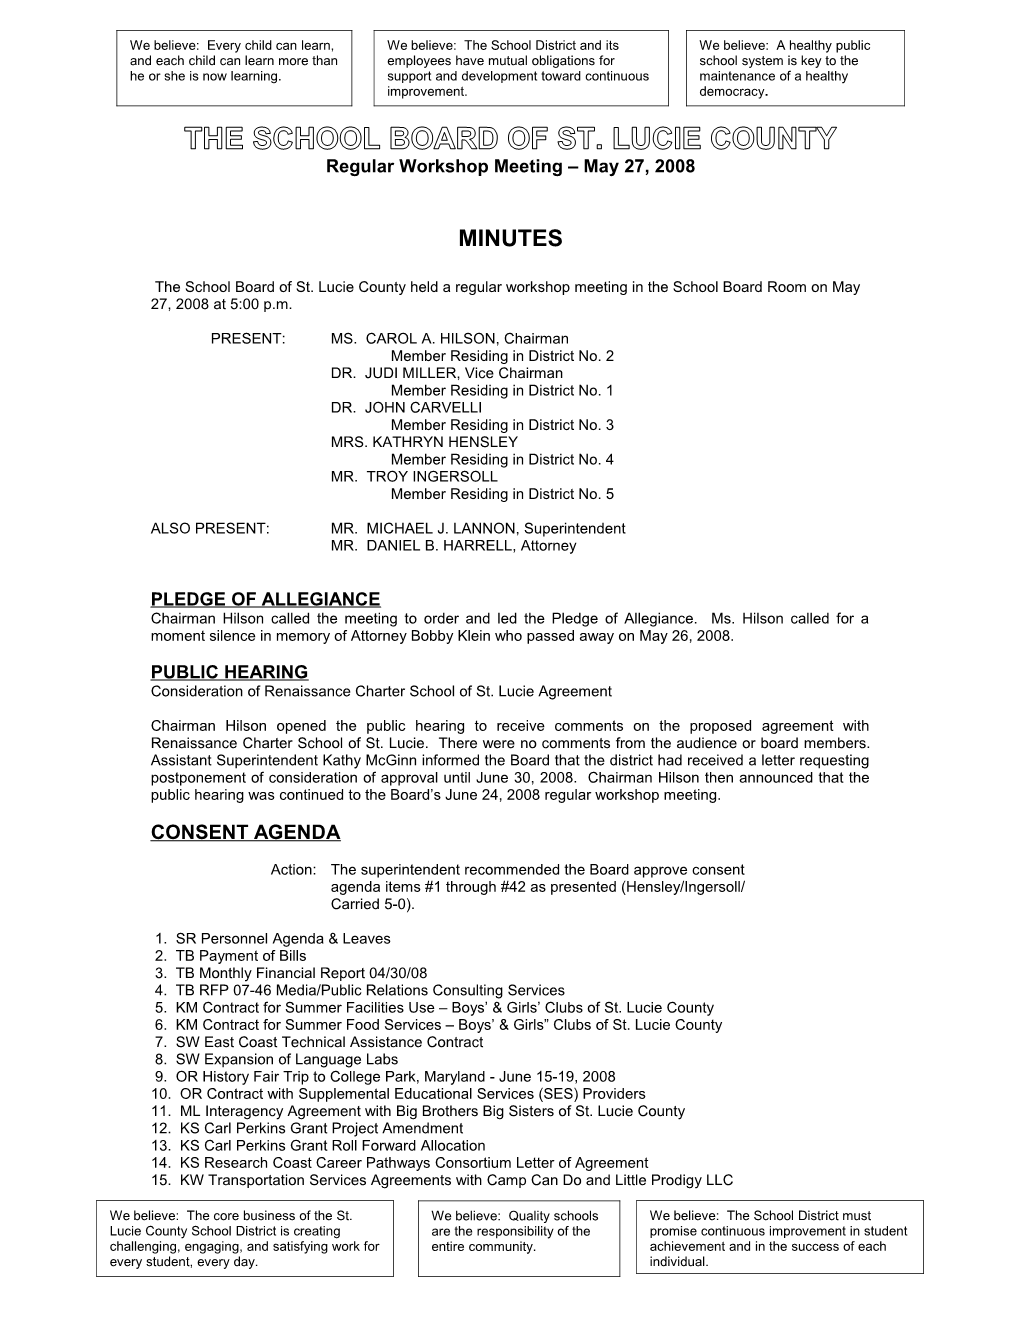 05-27-08 SLCSB Regular Workshop Minutes